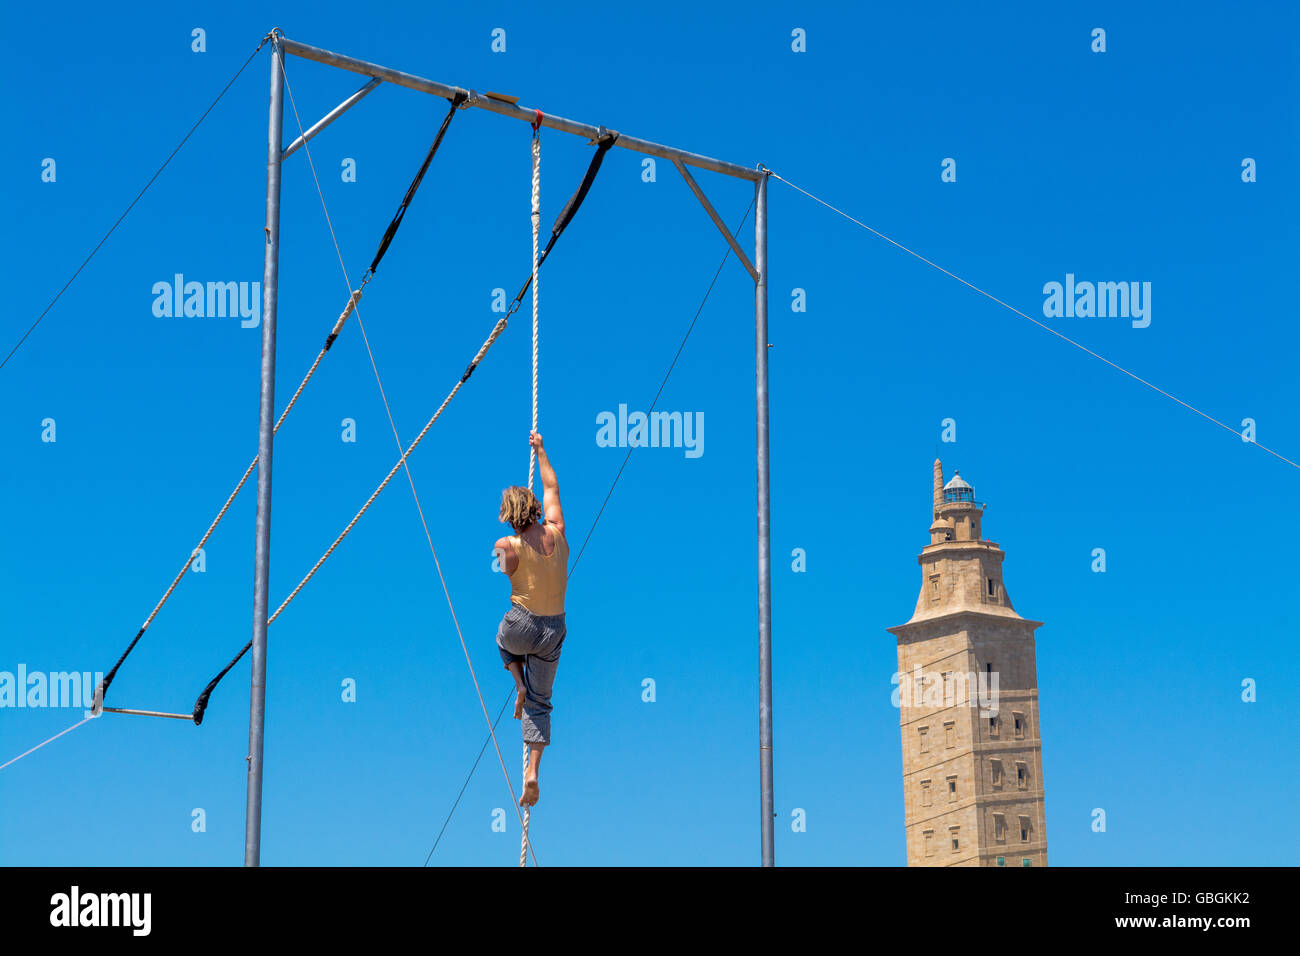 Low Angle View Of Gymnast sur corde contre Ciel Bleu clair Banque D'Images